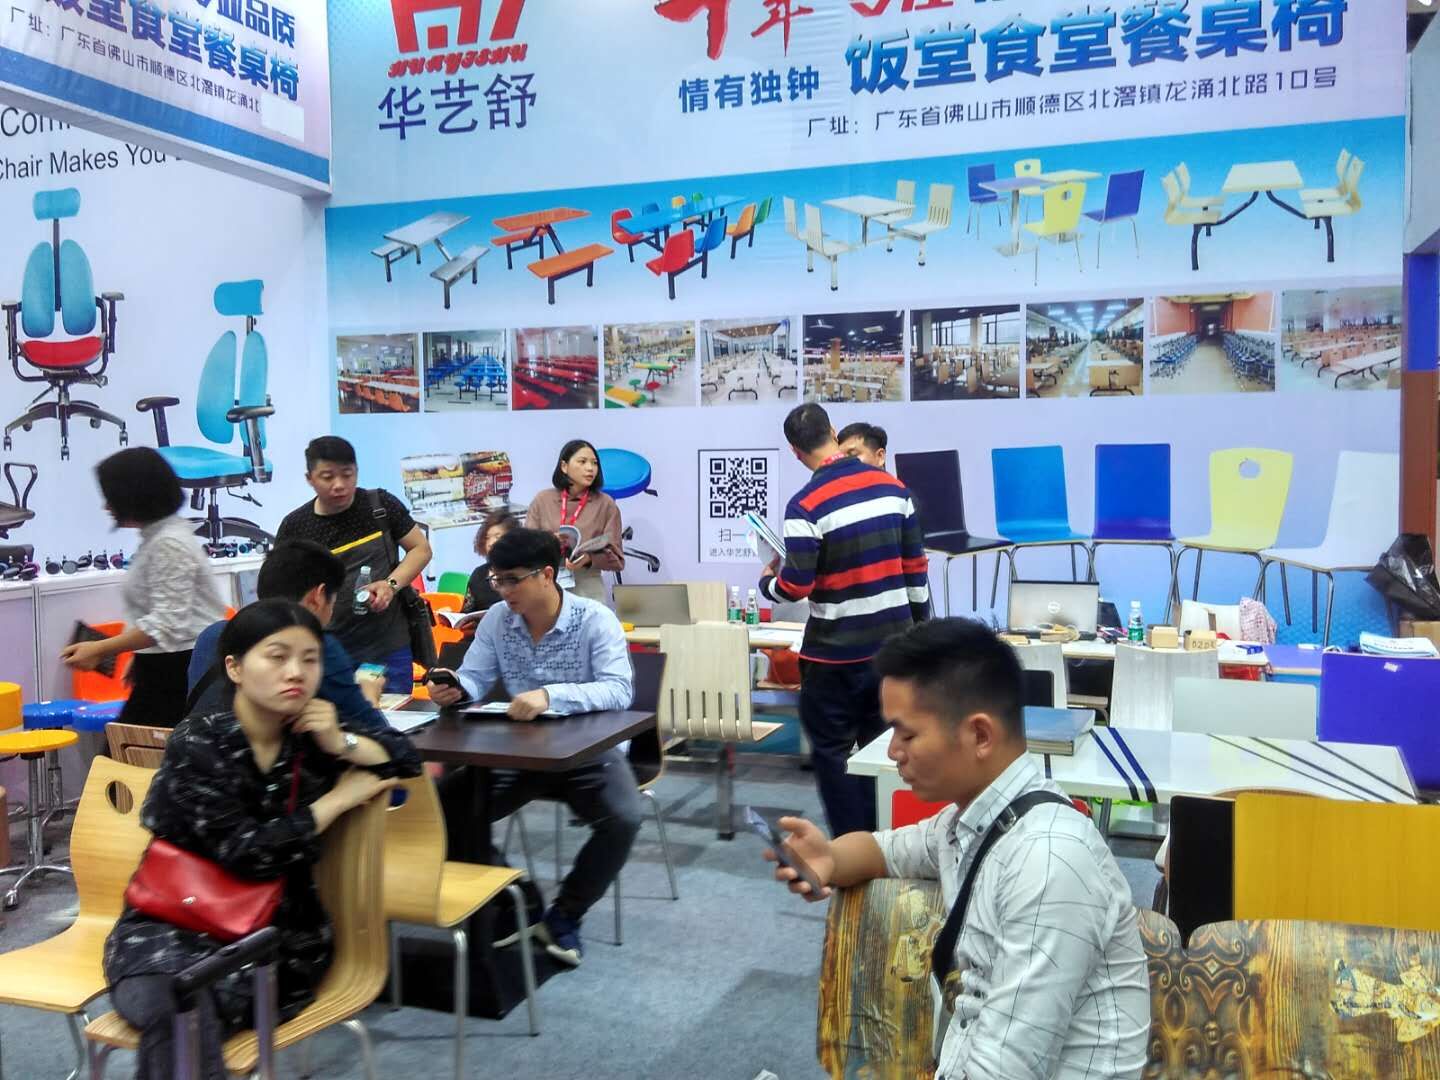 华艺舒参加第41届中国(广州)国际家具博览会现场图片展示